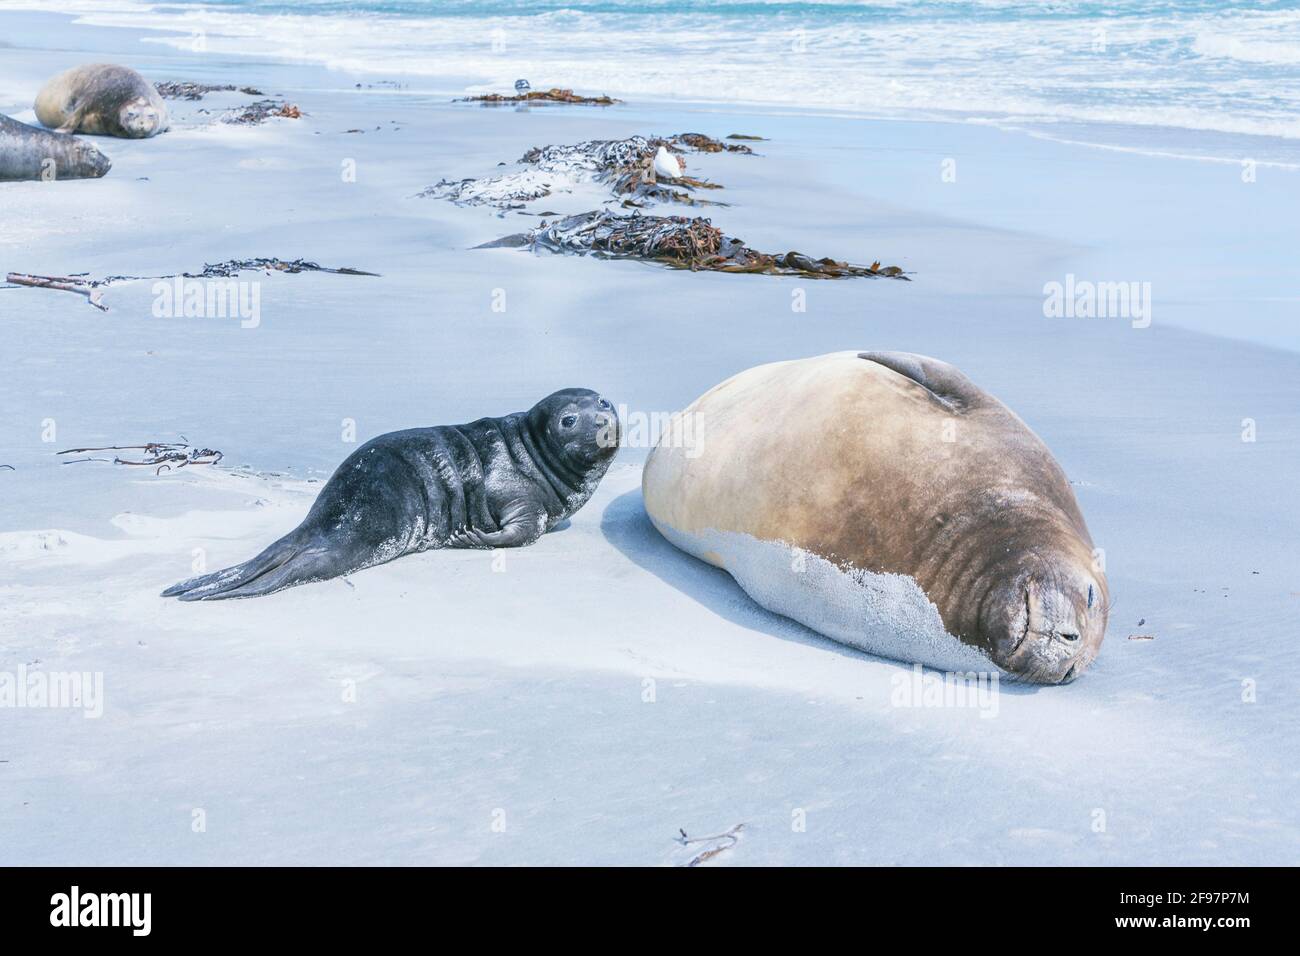 La foca dell'Elefante Meridionale (Mirounga leonina) femmina con il suo cucino adagiato sulla spiaggia, Sea Lion Island, Falkland Islands, Sud America Foto Stock